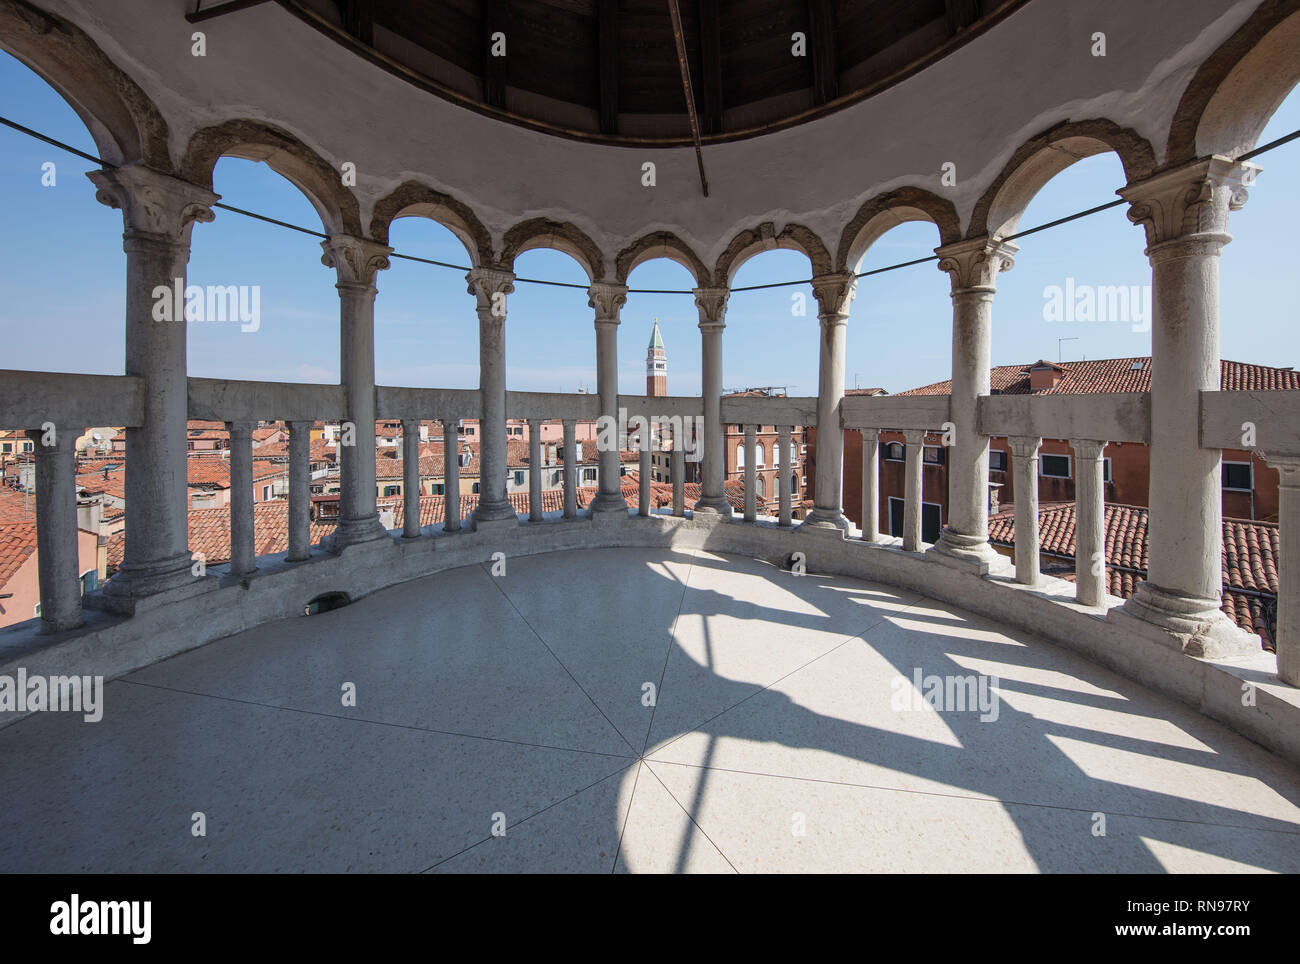 Perdersi a Venezia si arriva a inciampare su alcuni incredibile architettura. Uno dei più raffinati con una delle migliori viste è la splendida Scala Contarini Foto Stock